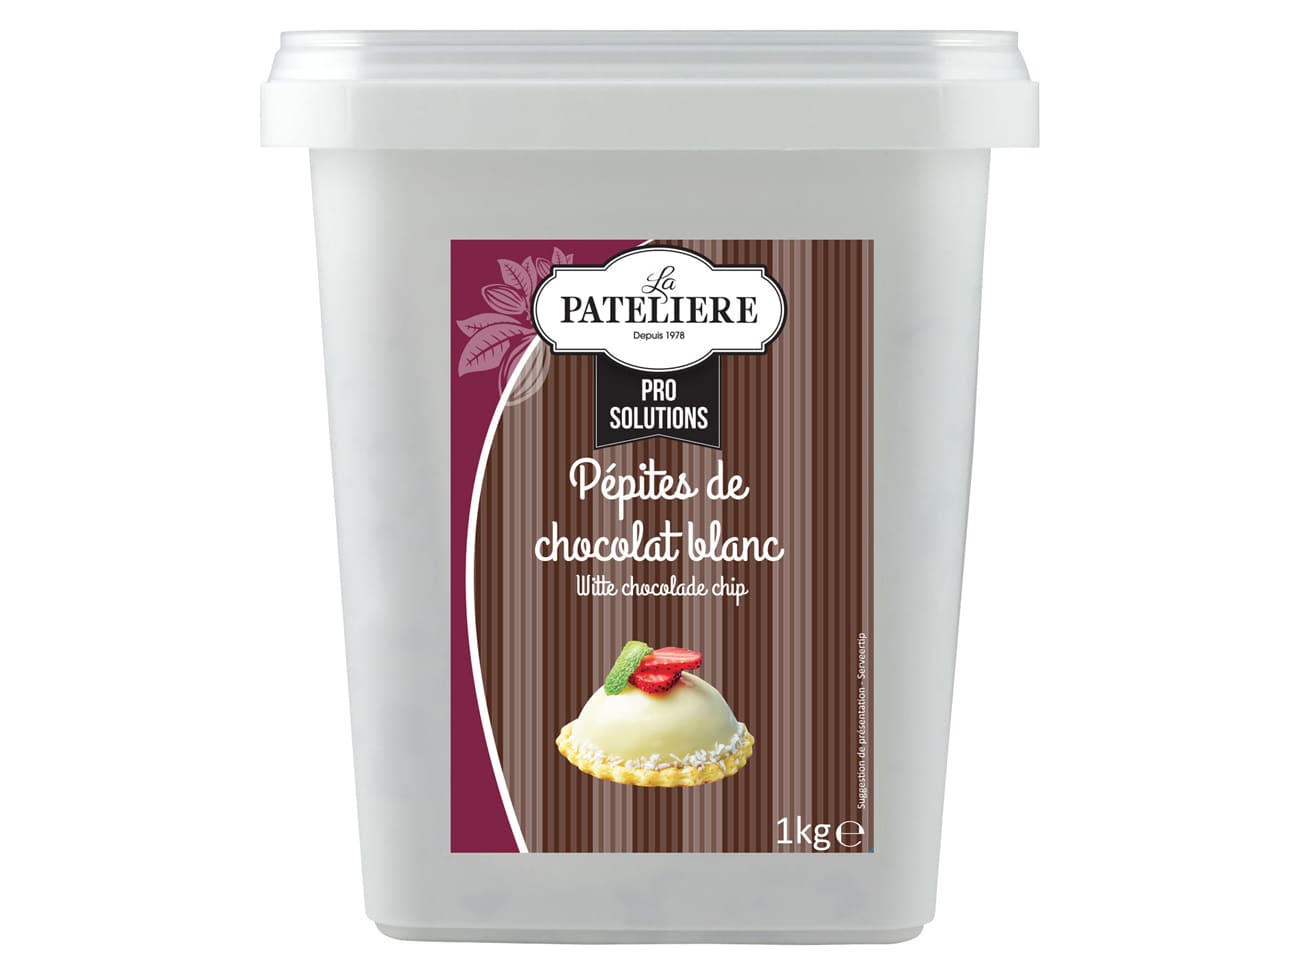 Pépites de chocolat au lait 30% - 1 kg - La Patelière - Meilleur du Chef